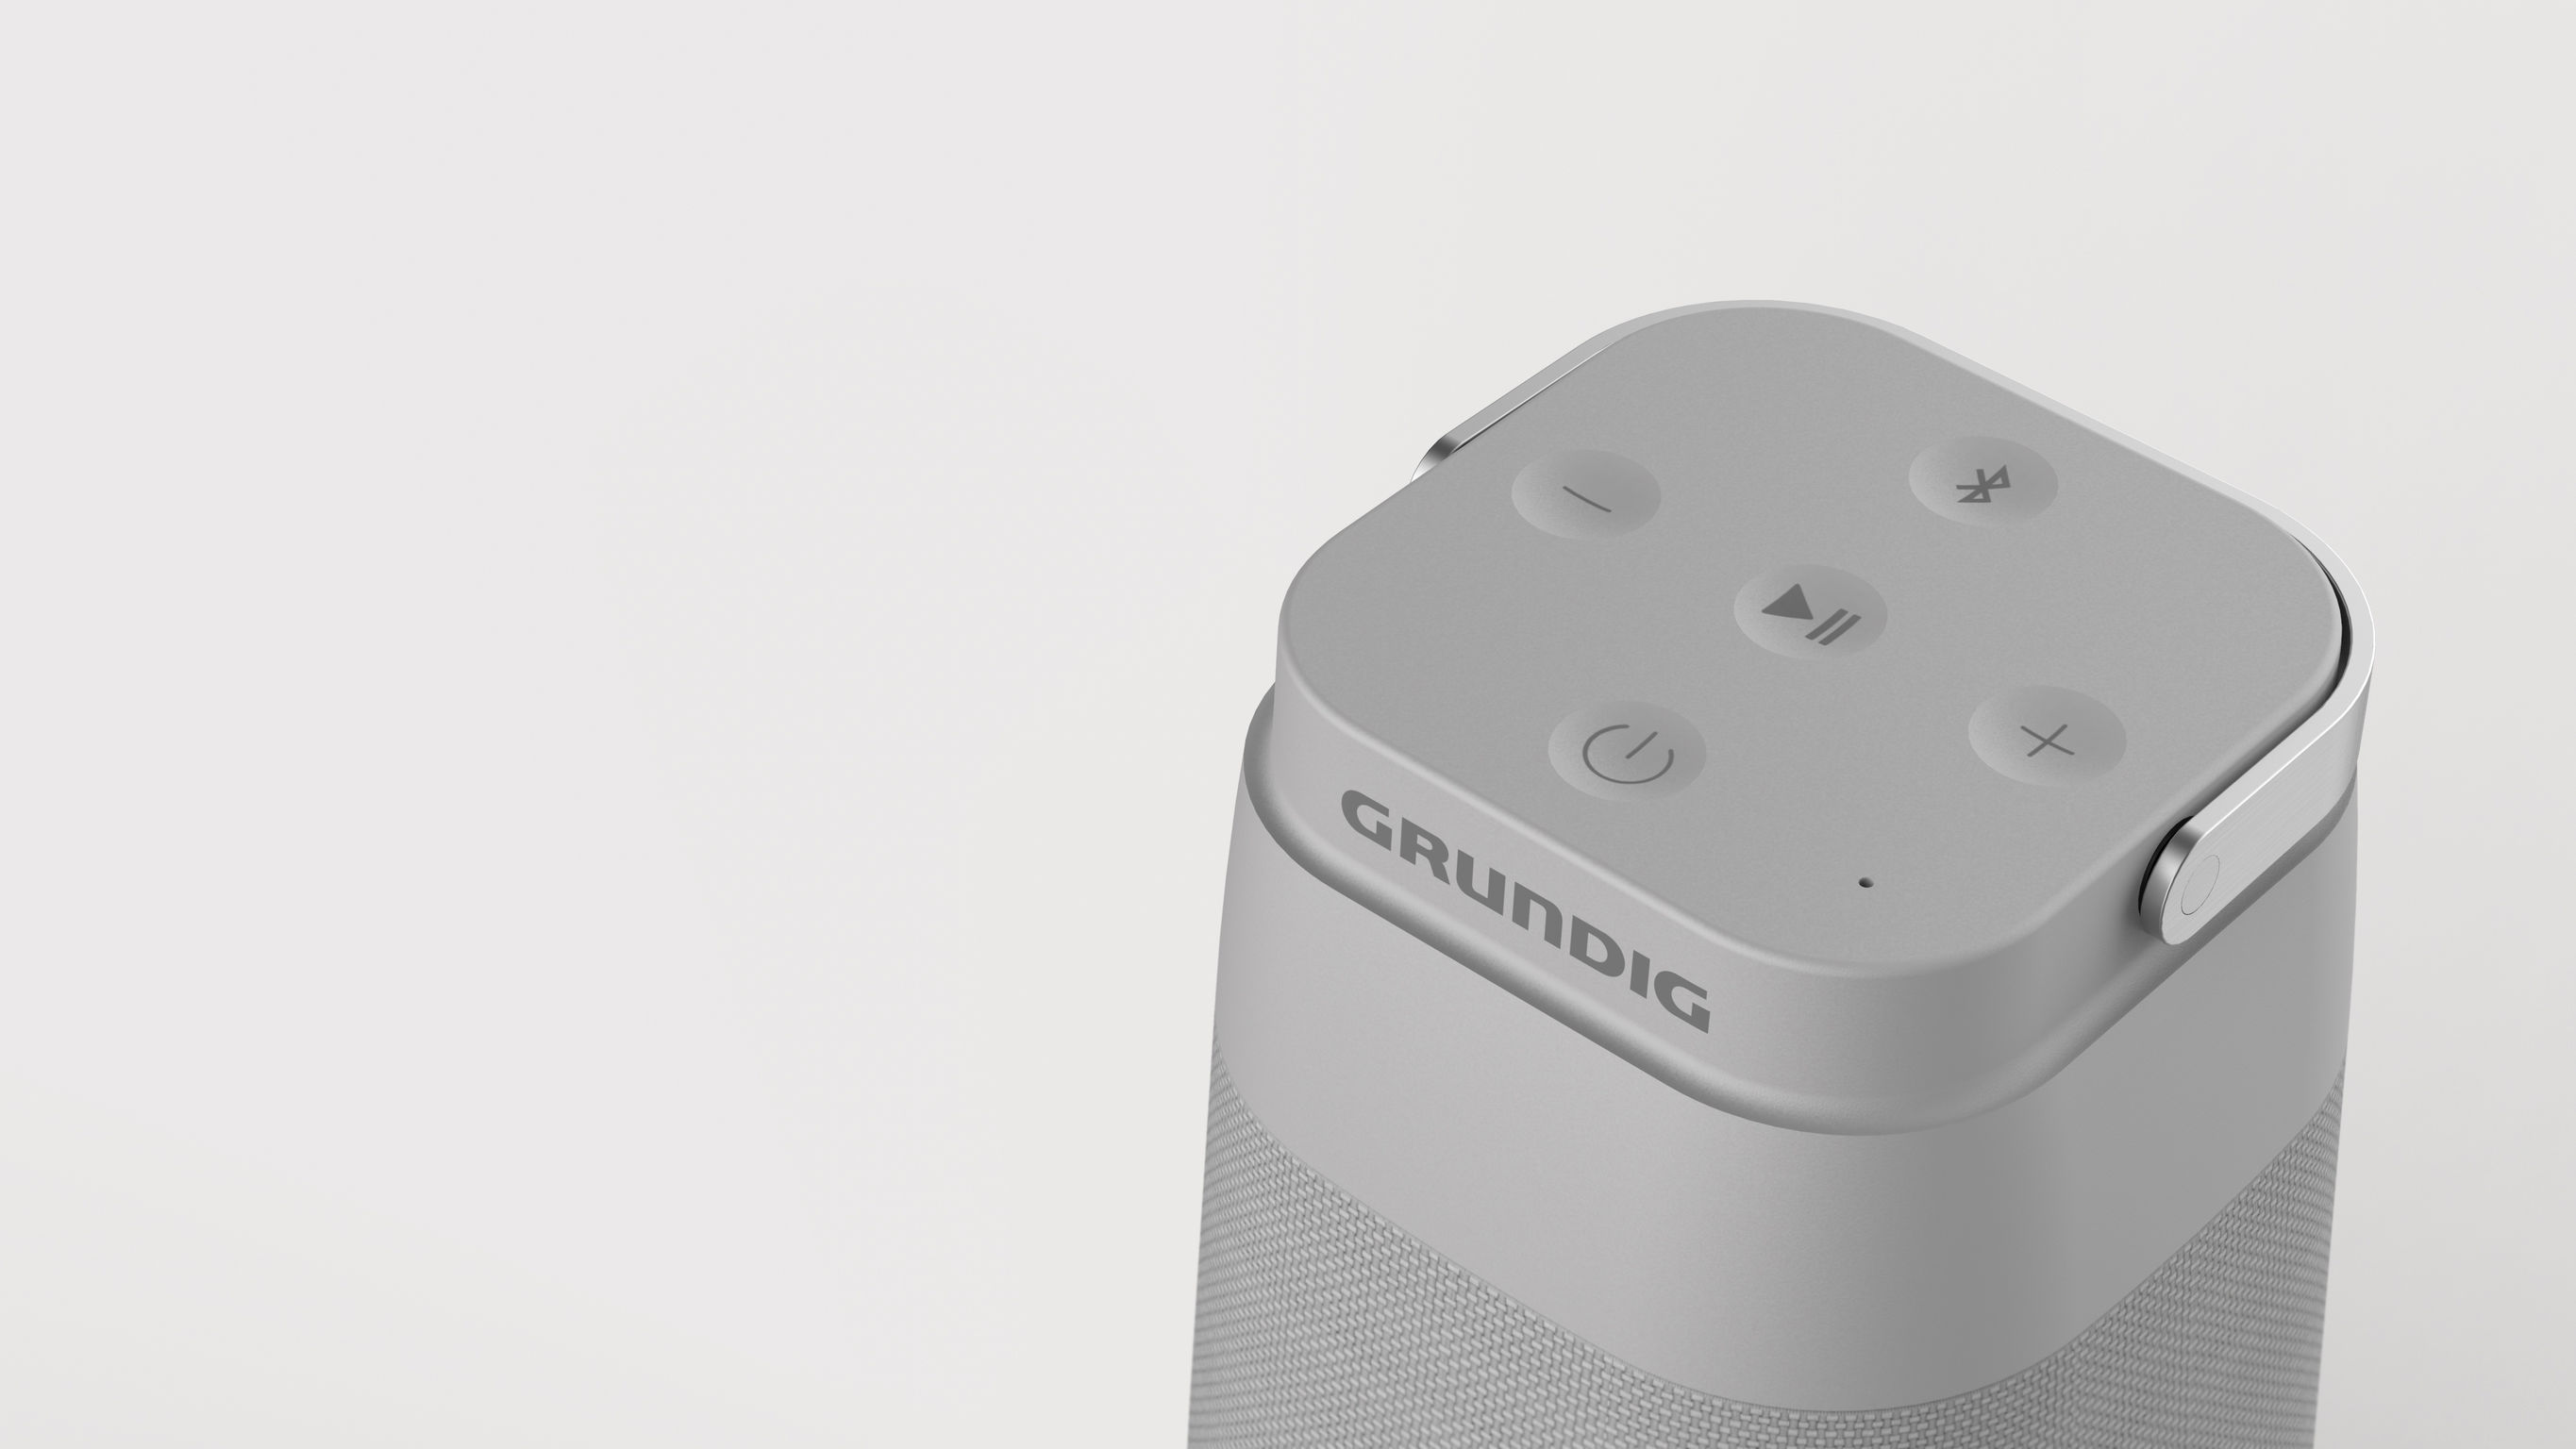 Grundig CONNECT 360 Bluetooth Speaker